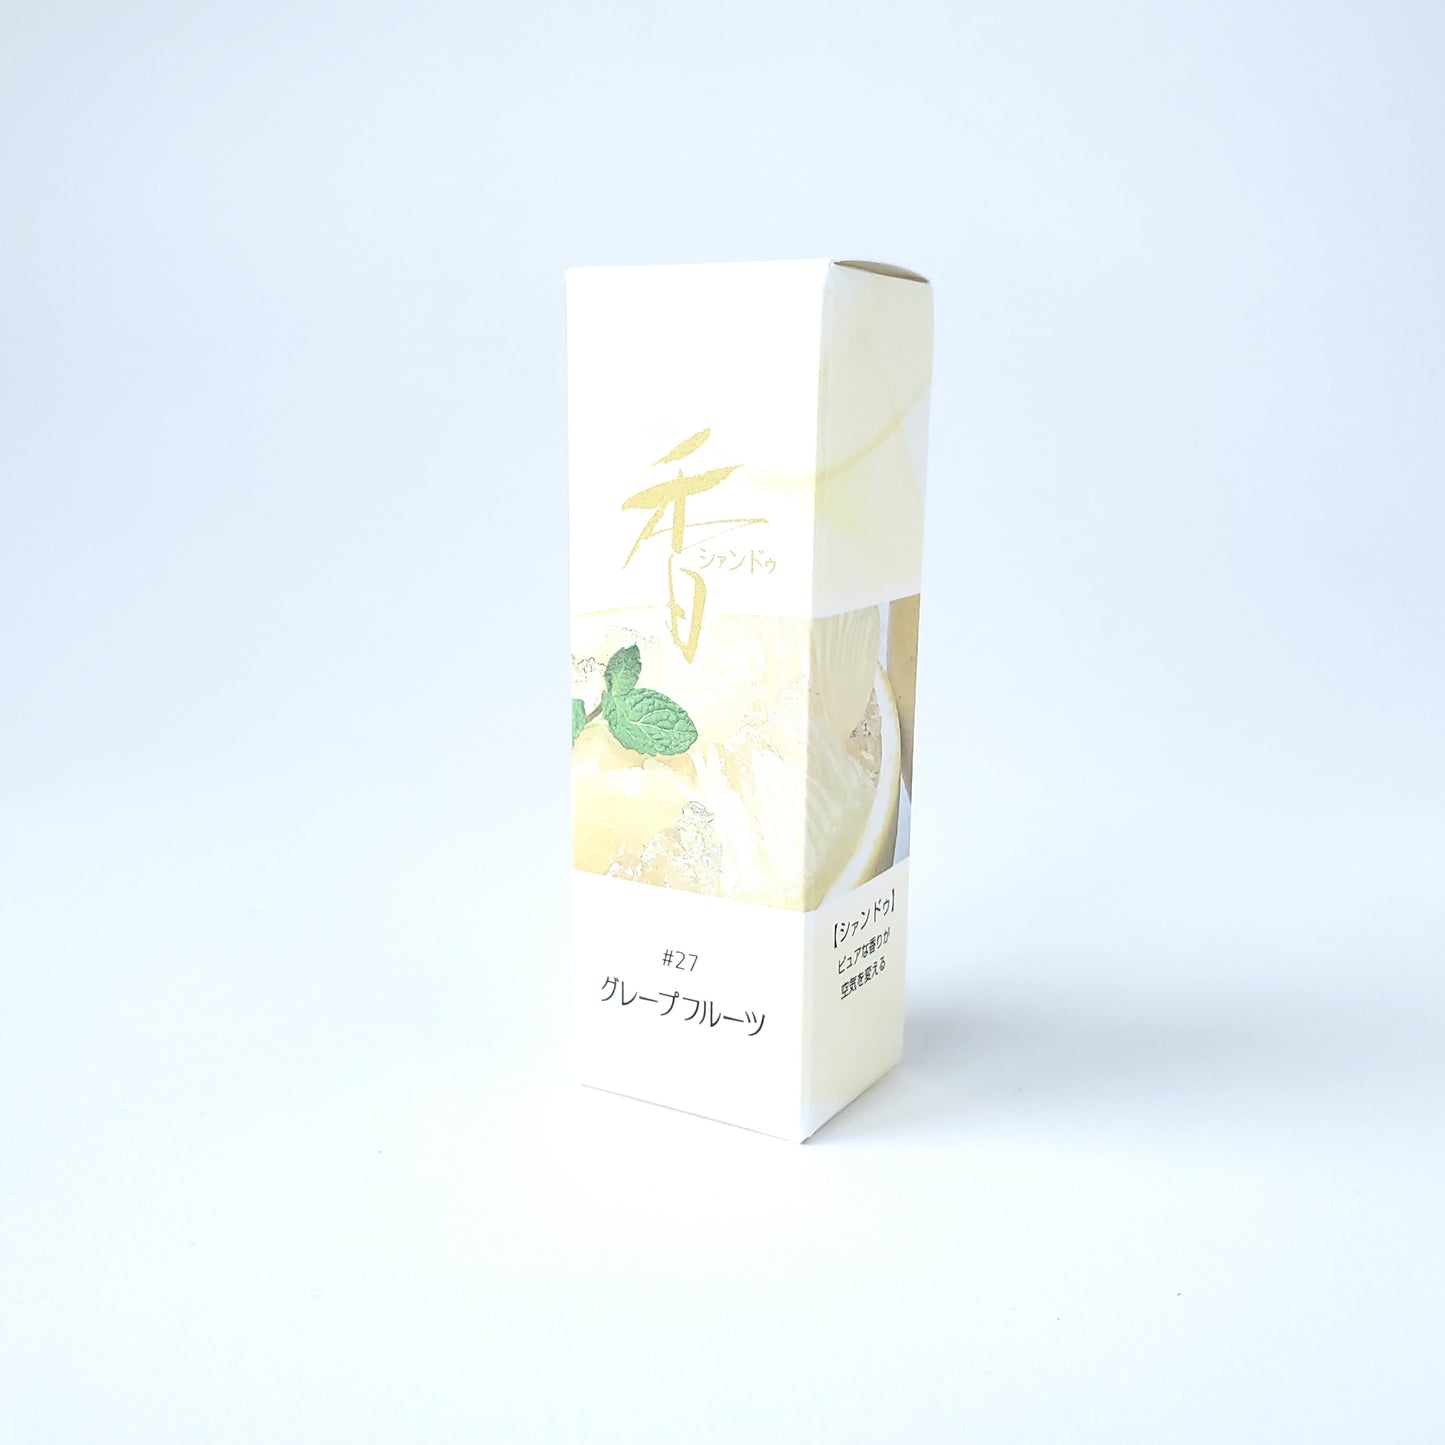 松栄堂のお香 シァンドゥ グレープフルーツ Xiang Do 京都 スティック アロマ インセンス 日本製